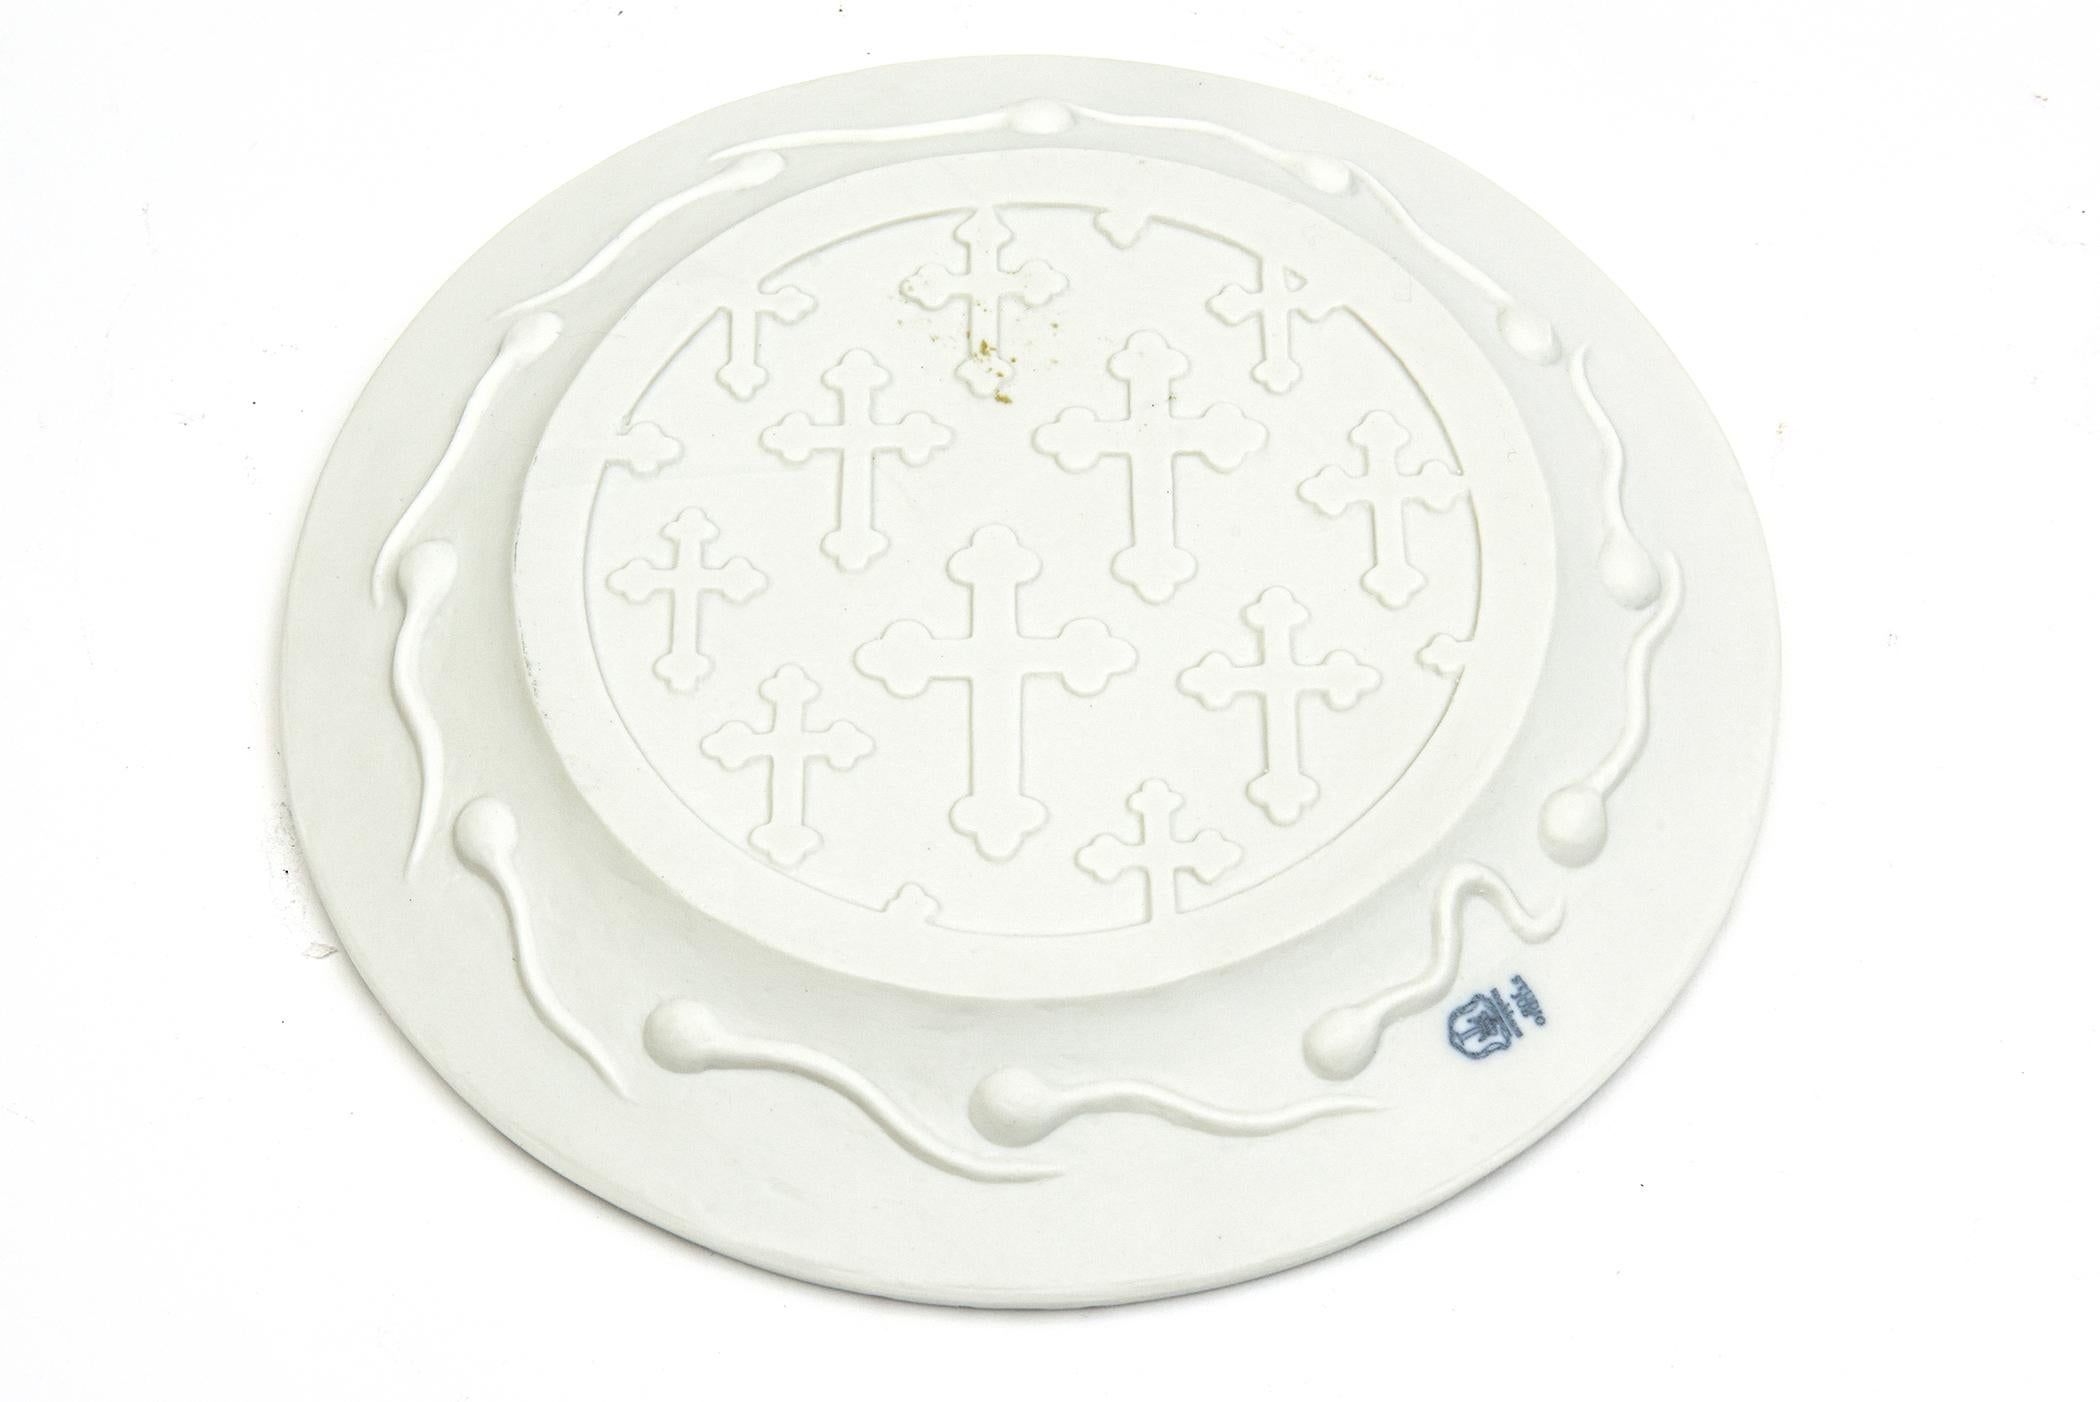 Studio Job for Makkum Pottery Textural Relief White Matt Porcelain Plate For Sale 1